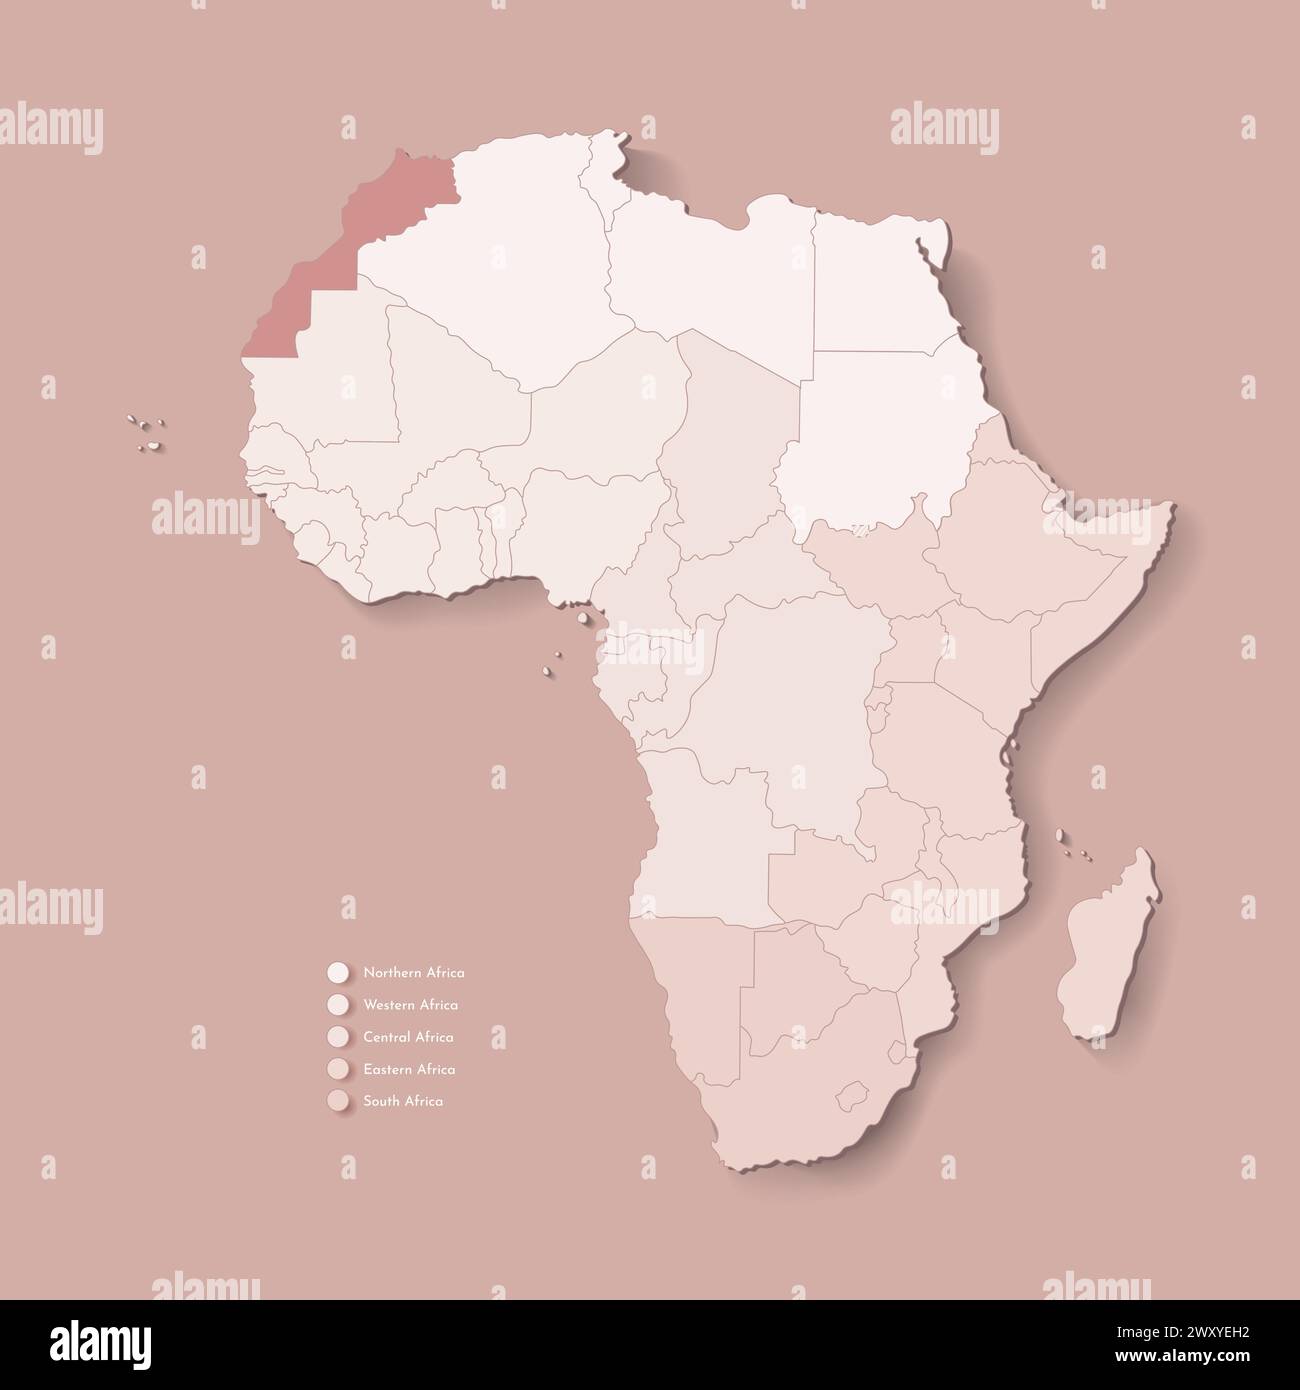 Illustrazione vettoriale con continente africano con confini di tutti gli stati e paese marcato Marocco. Mappa politica in colori marroni con occidentale, sud AN Illustrazione Vettoriale